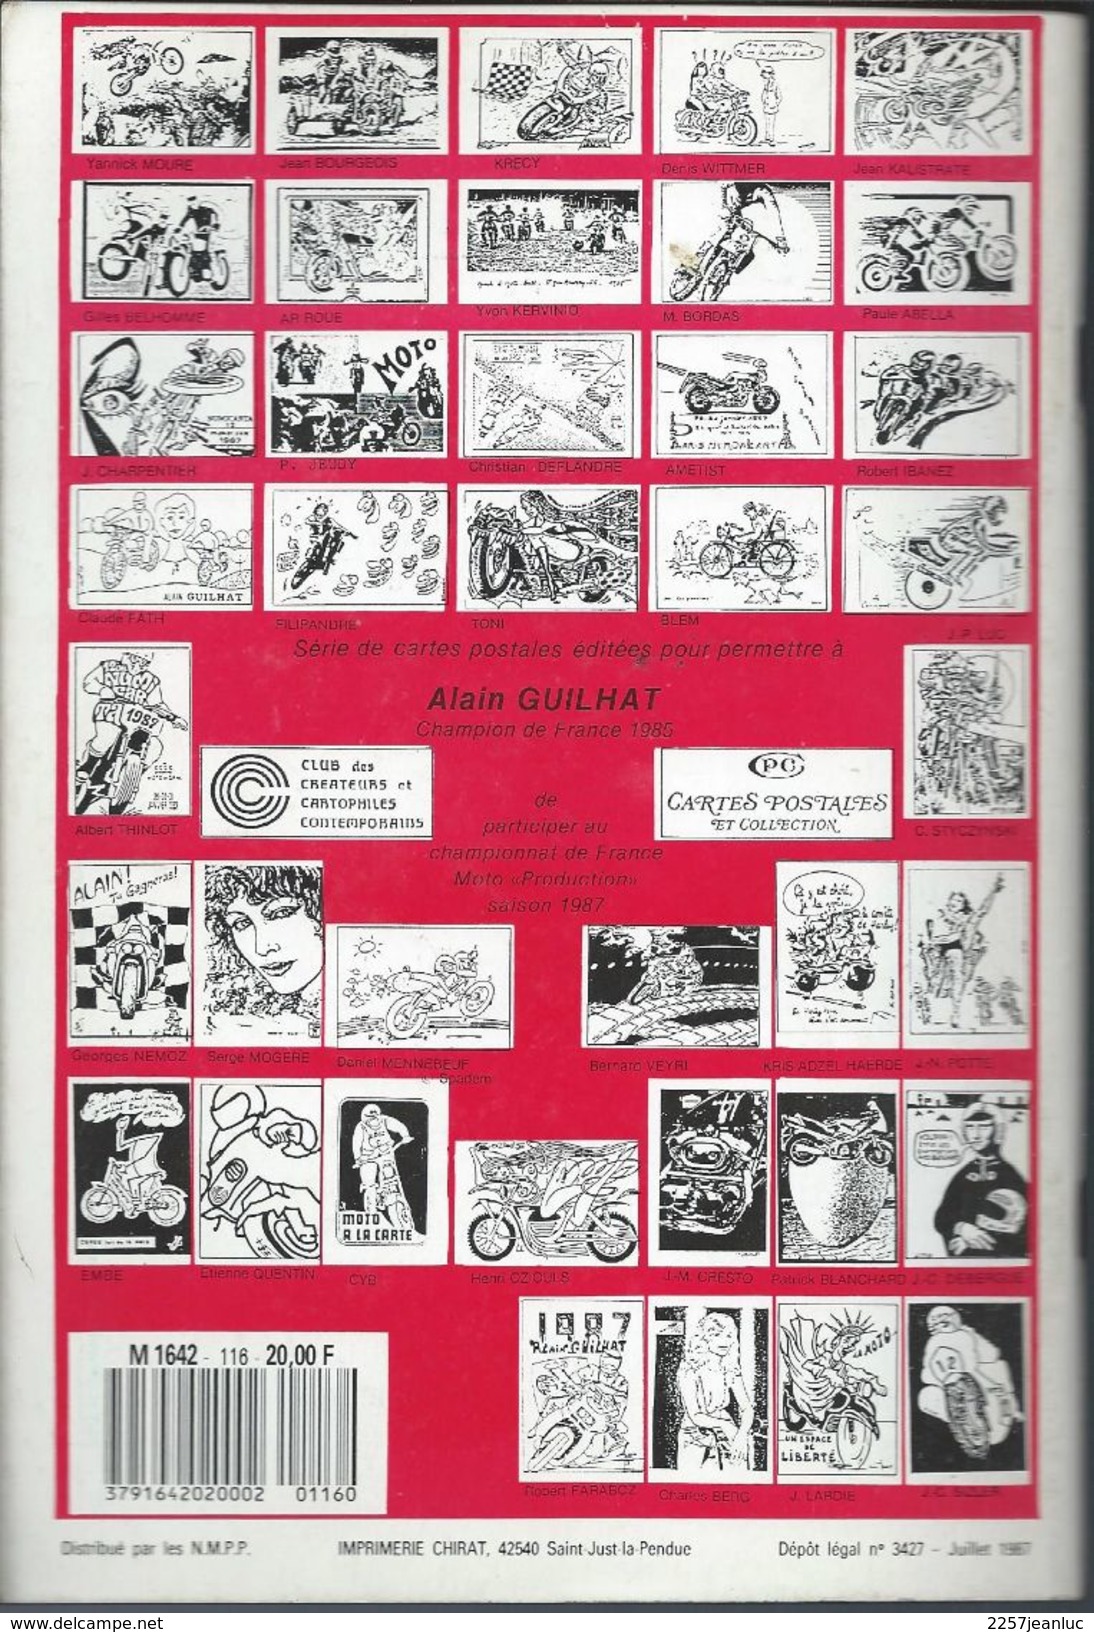 Cartes Postales Et Collections Aout 1987  Magazines N: 116 Llustration &  Thèmes Divers 100 Pages - Frans